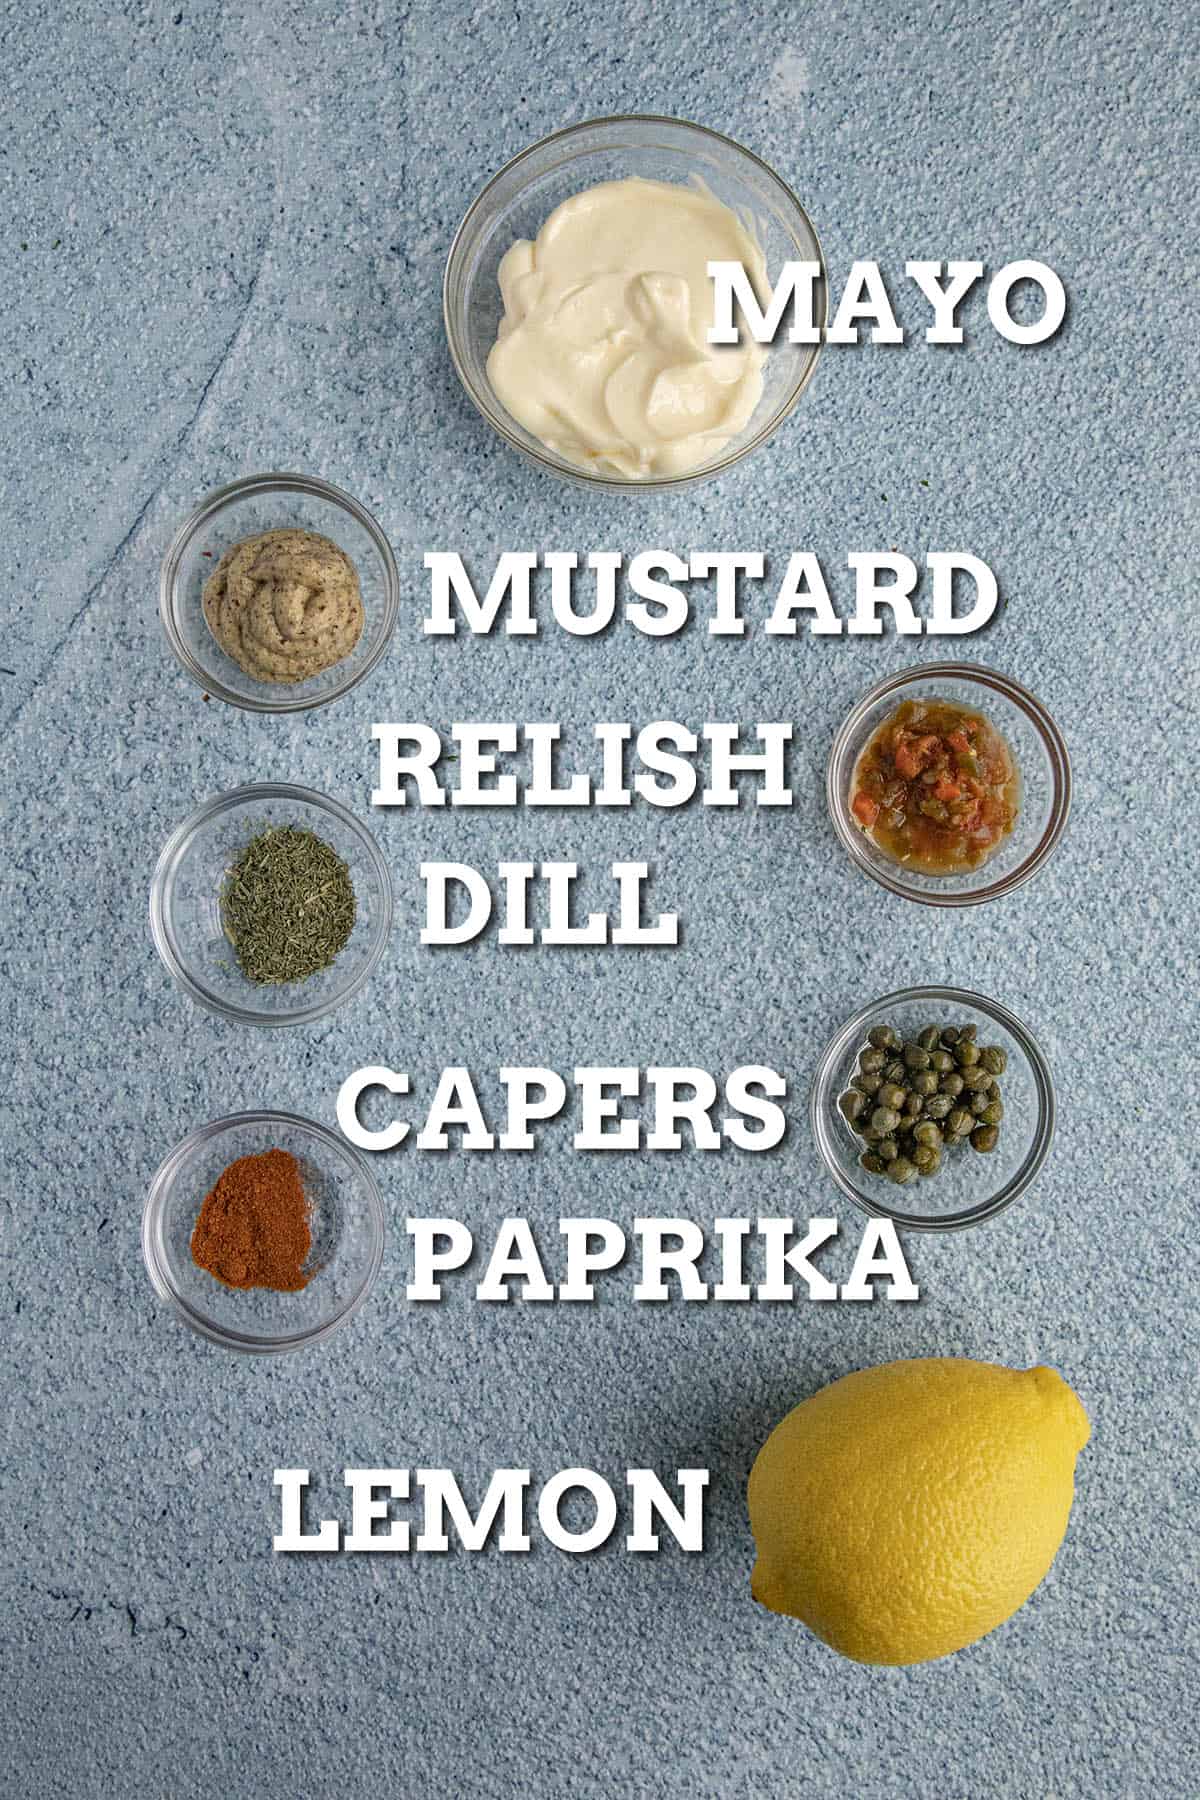 Tartar Sauce Ingredients